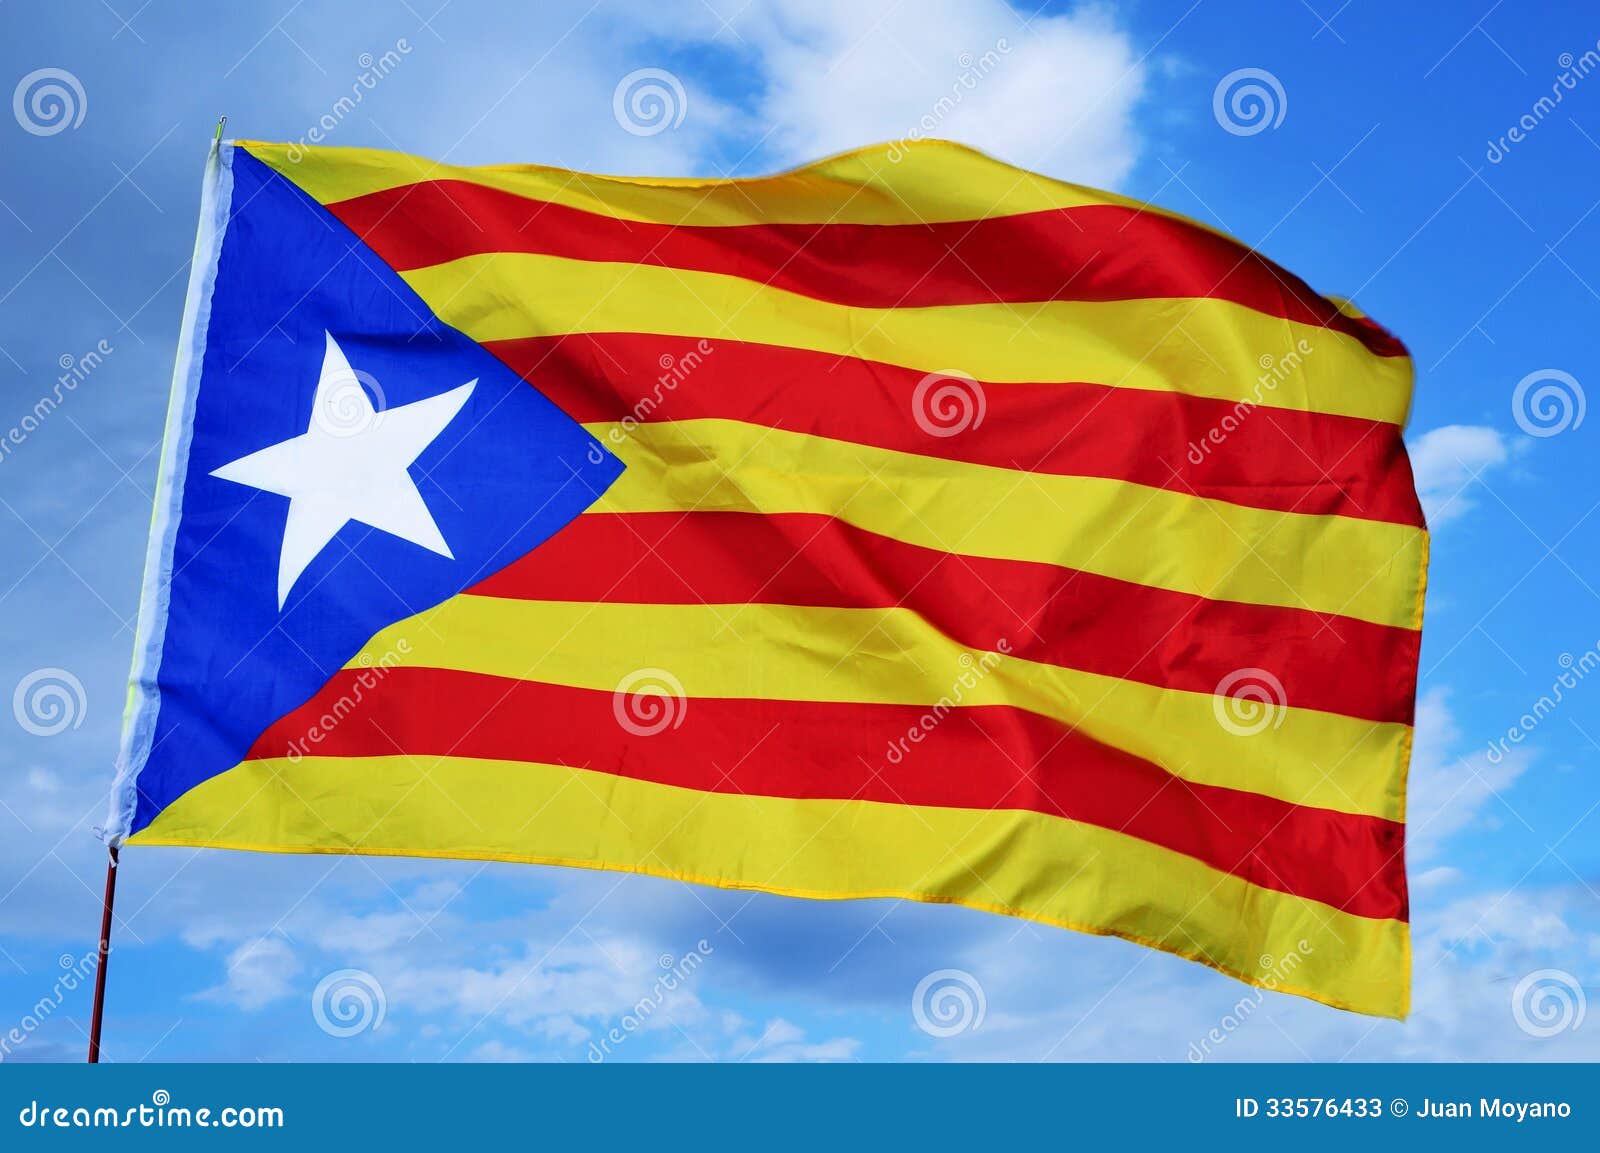 estelada, the catalan separatist flag